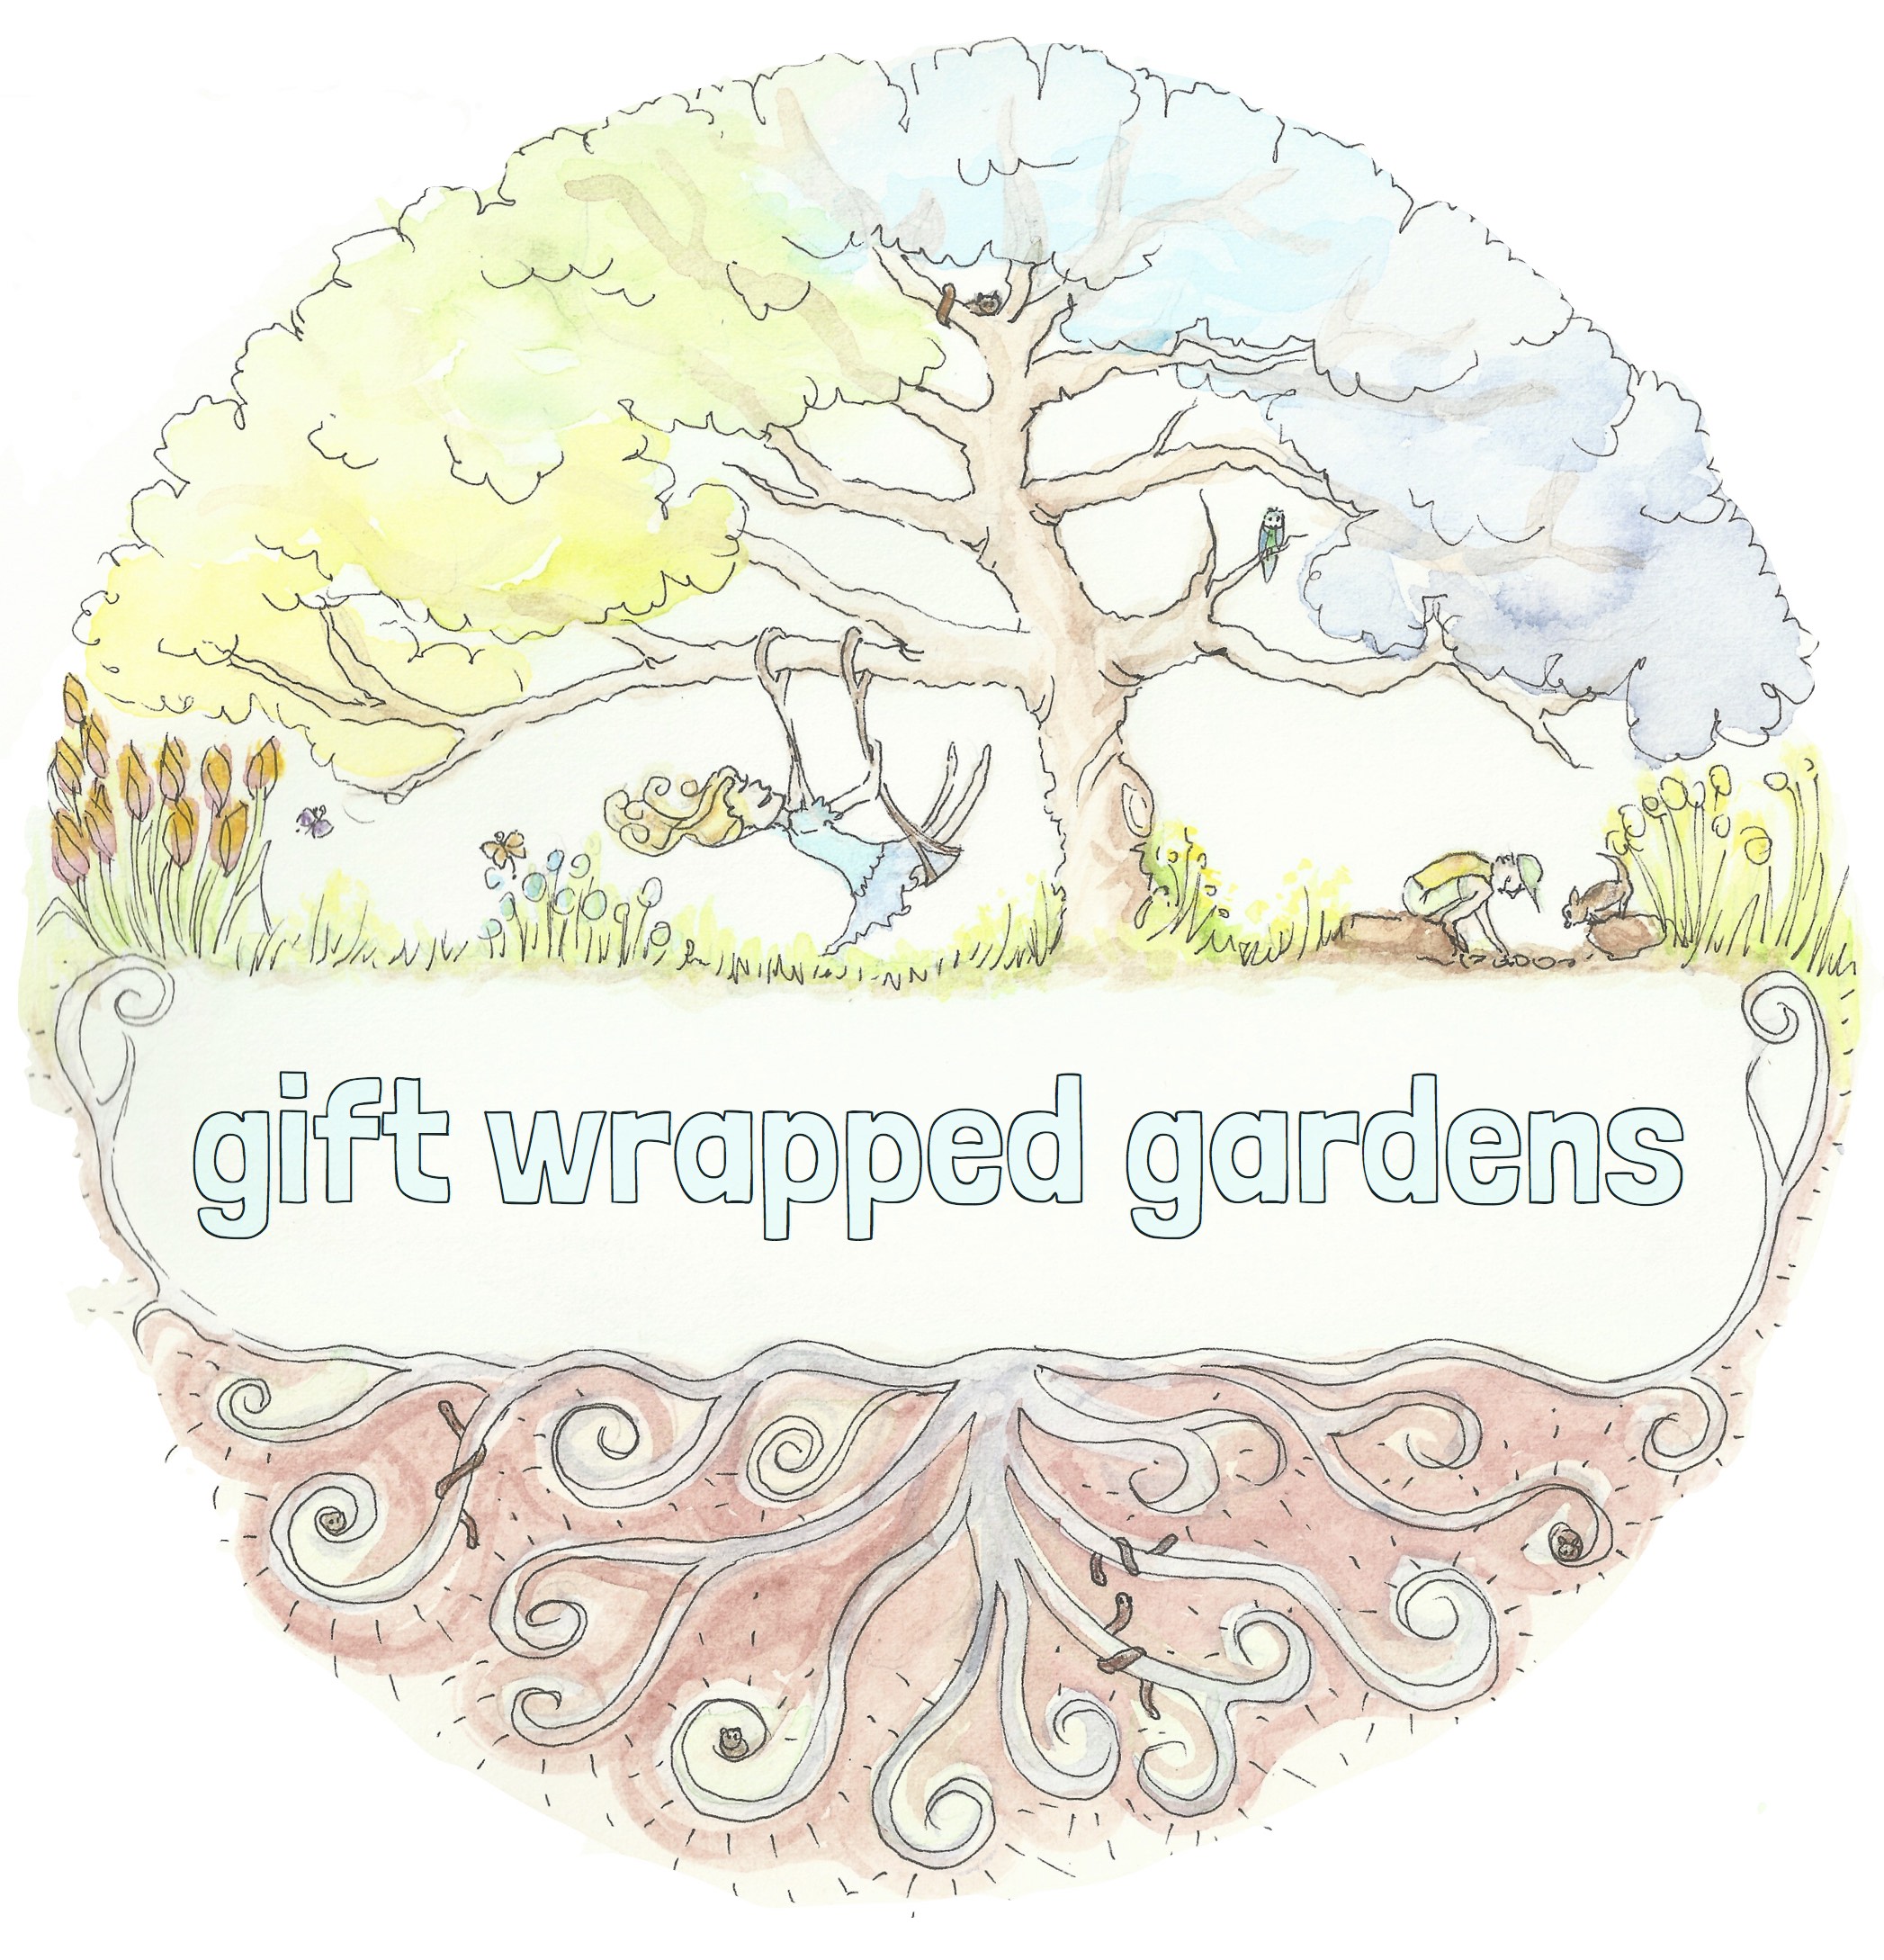 giftwrappedgardens.com.au